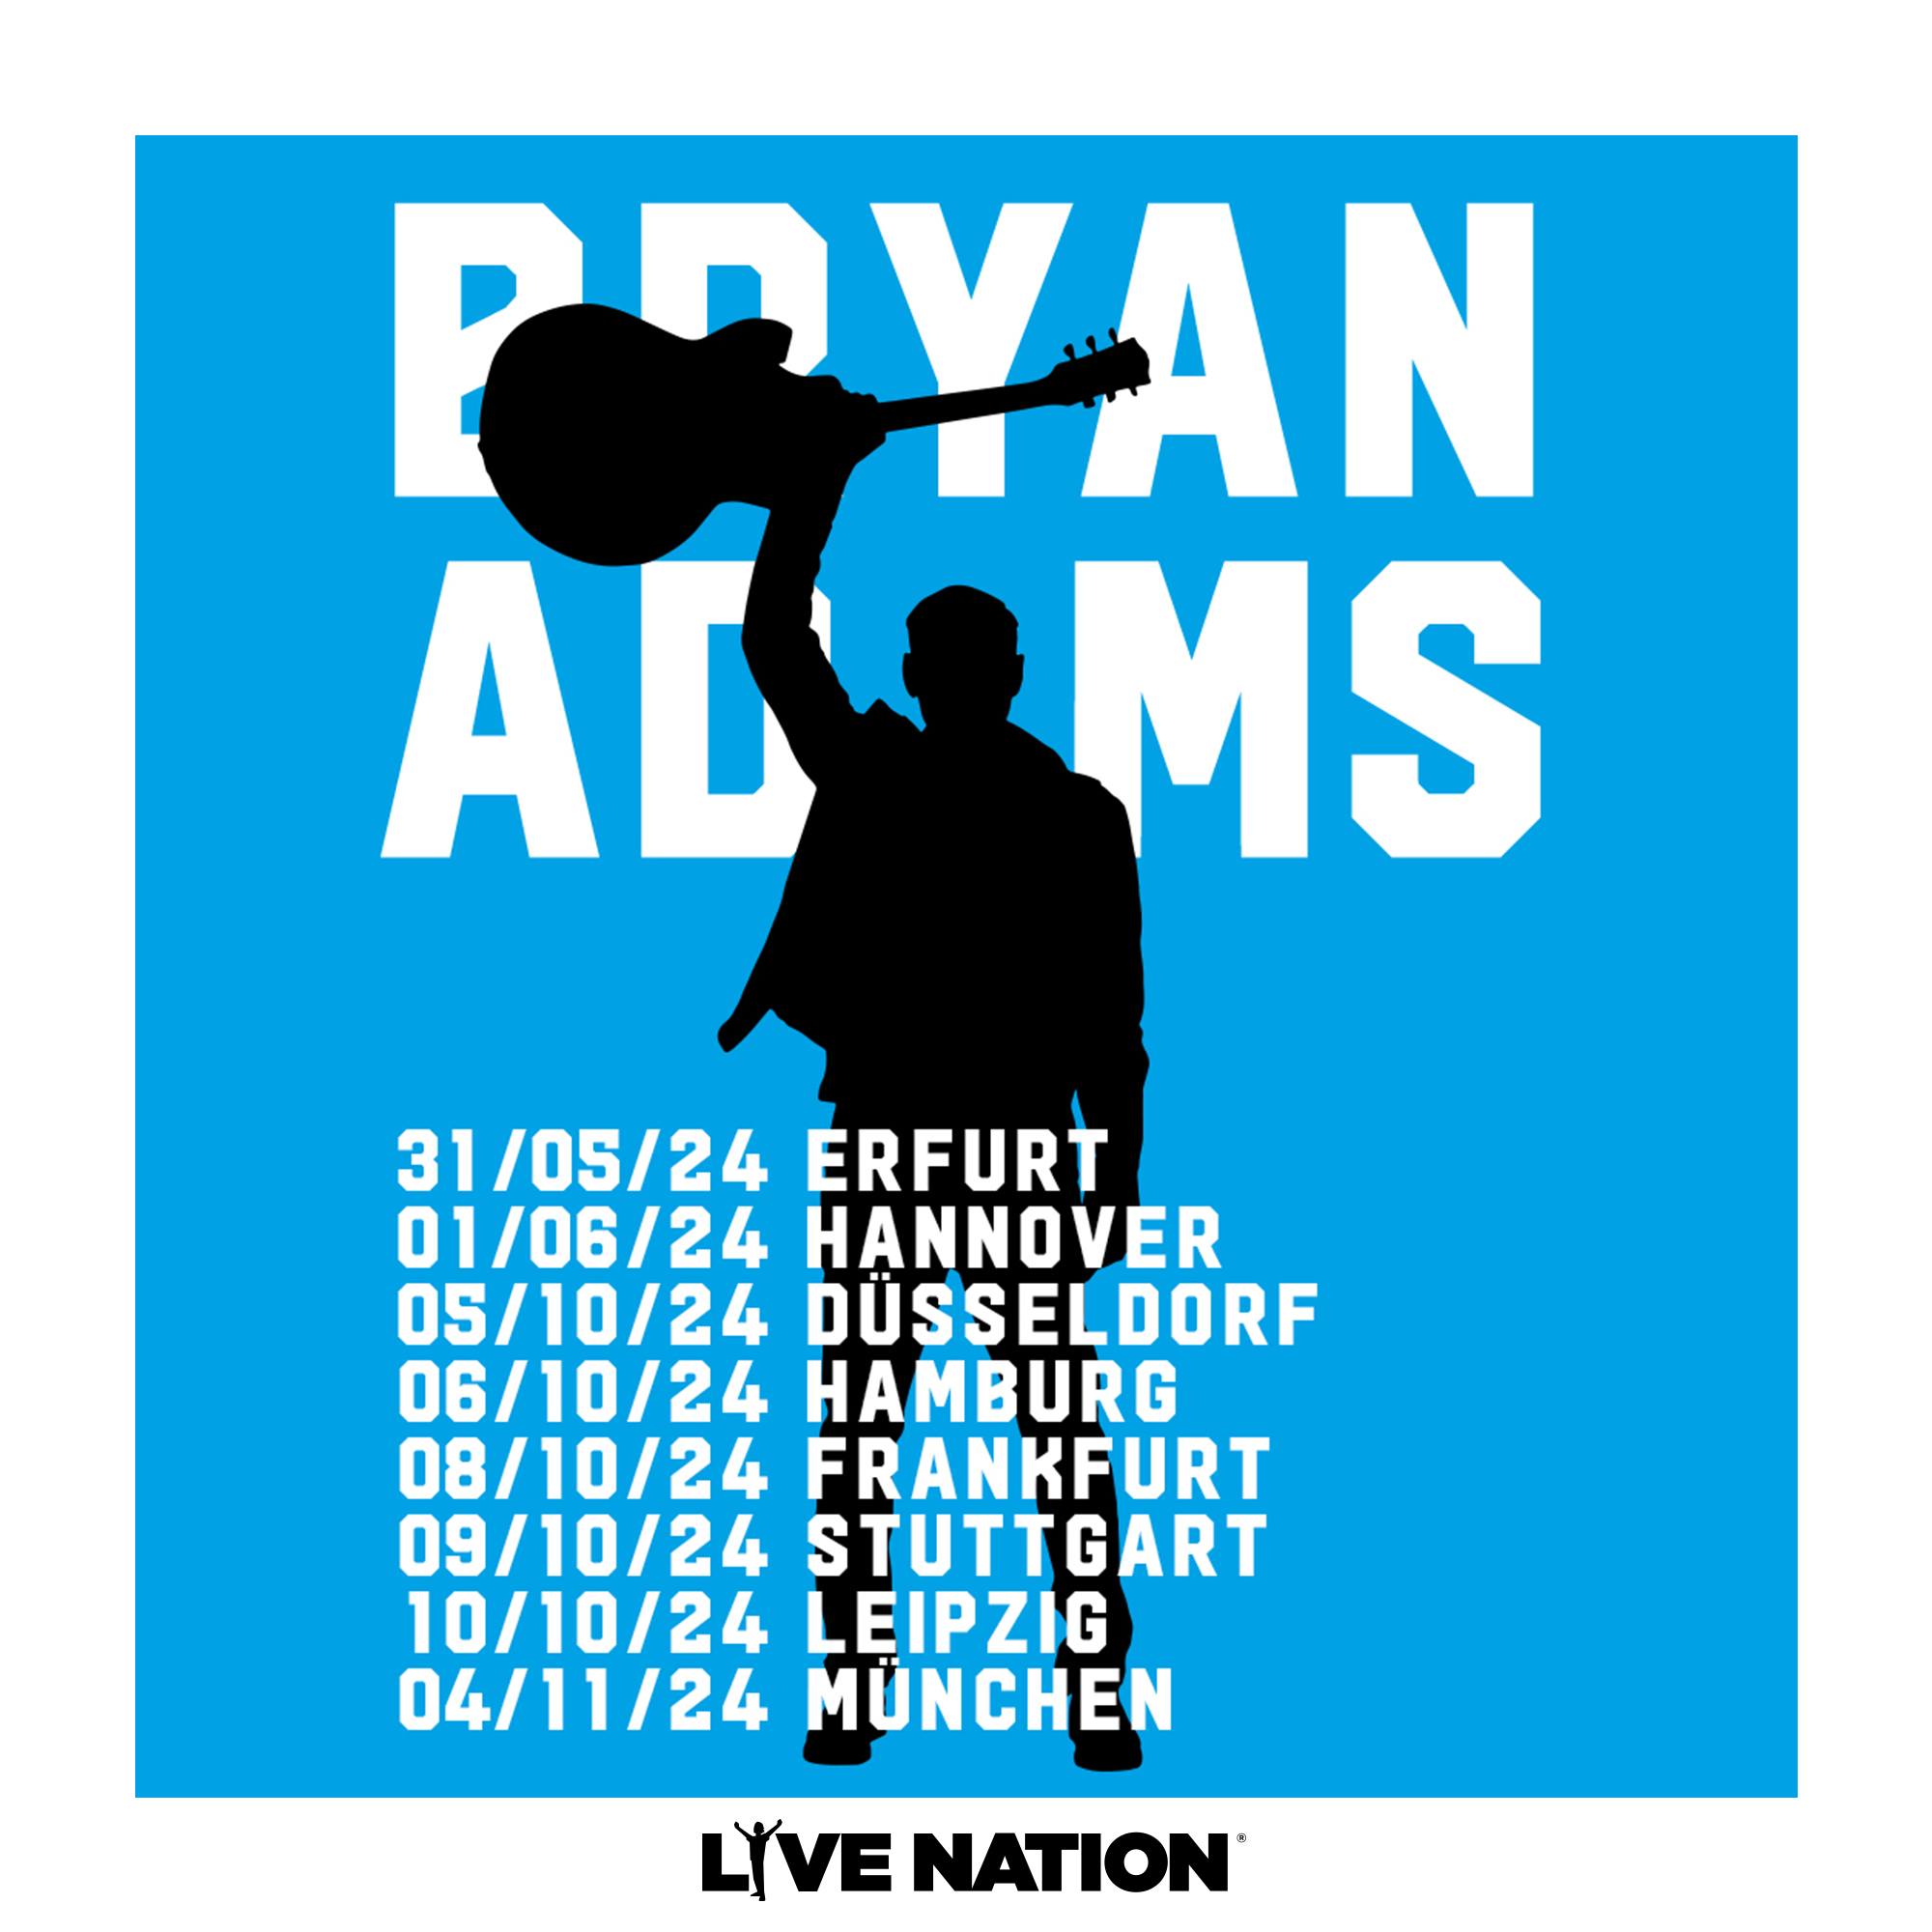 Bryan Adams at Messehalle Erfurt Tickets